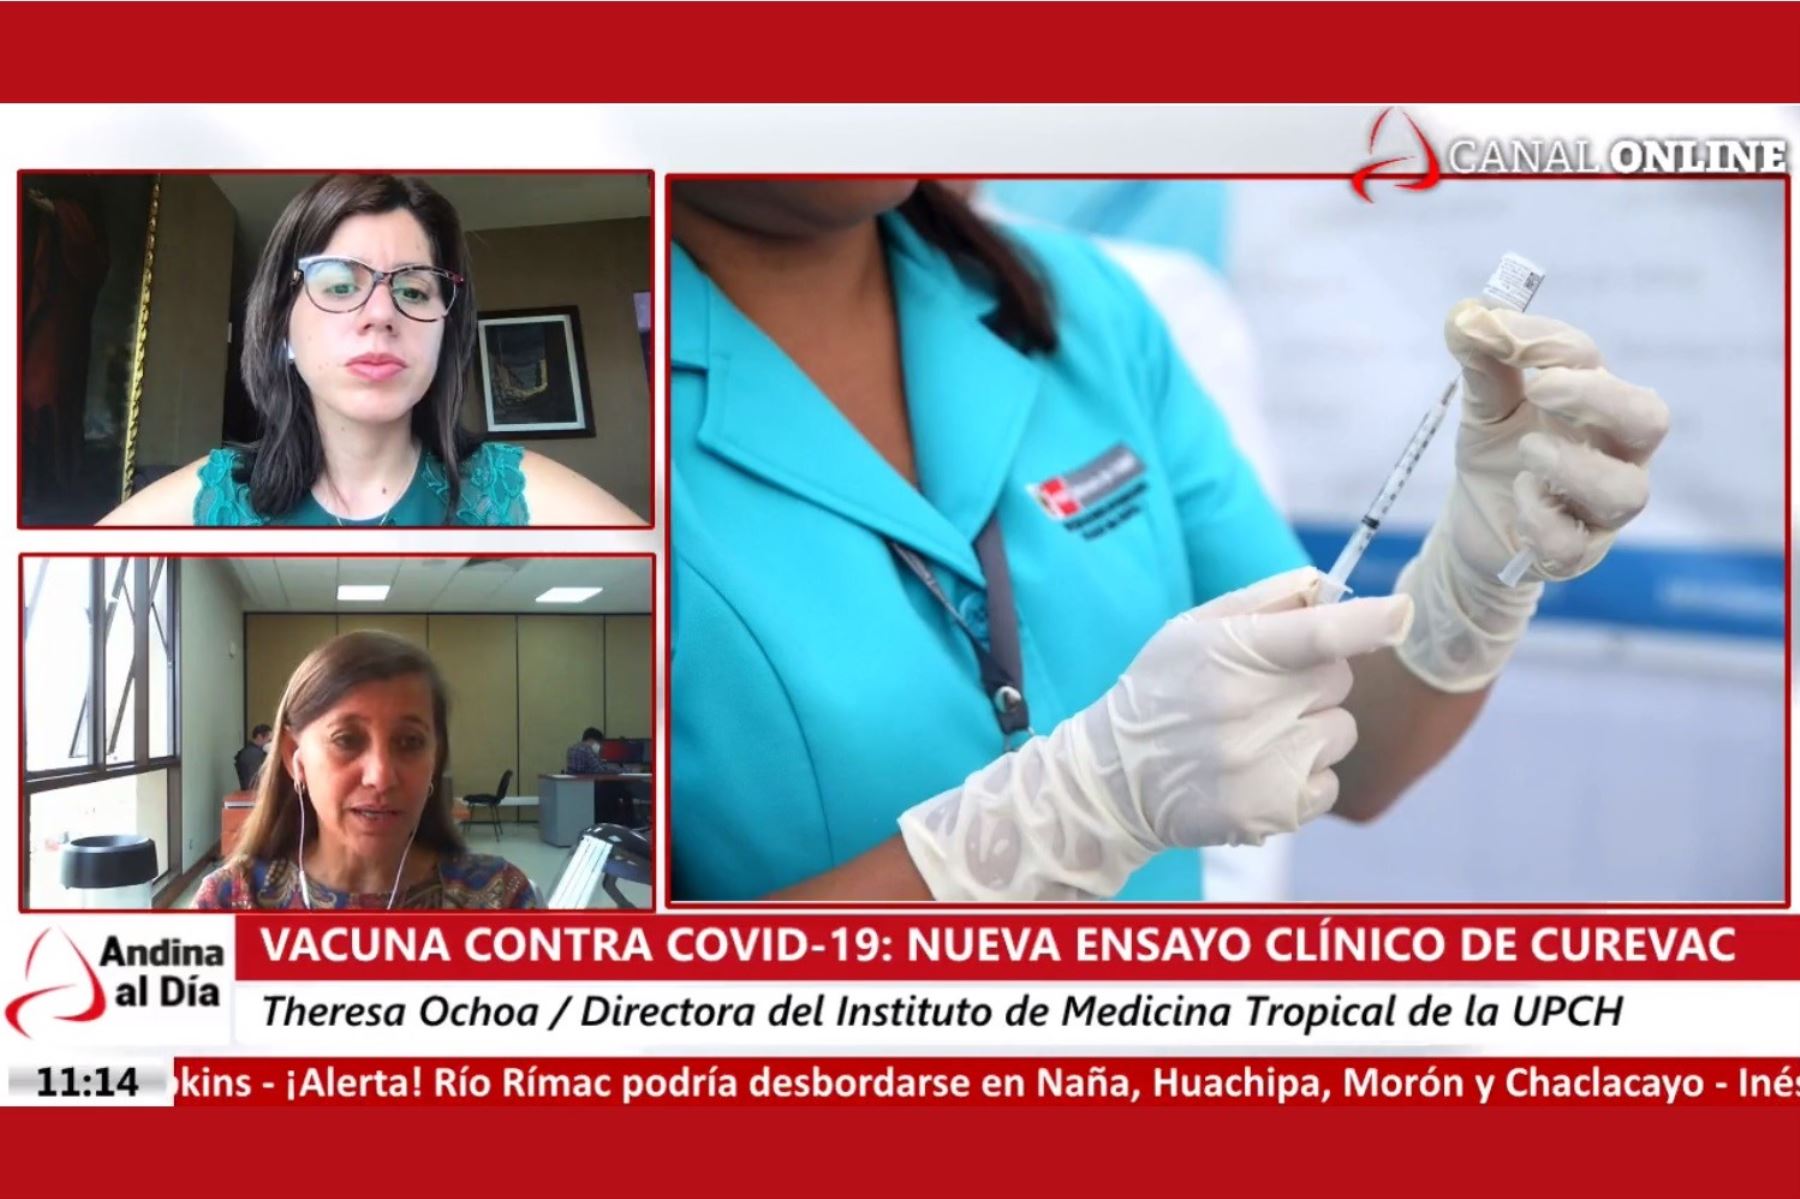 Directora del Instituto de Medicina Tropical de la Universidad Peruana Cayetano Heredia (UPCH), Theresa Ochoa, en entrevista en 